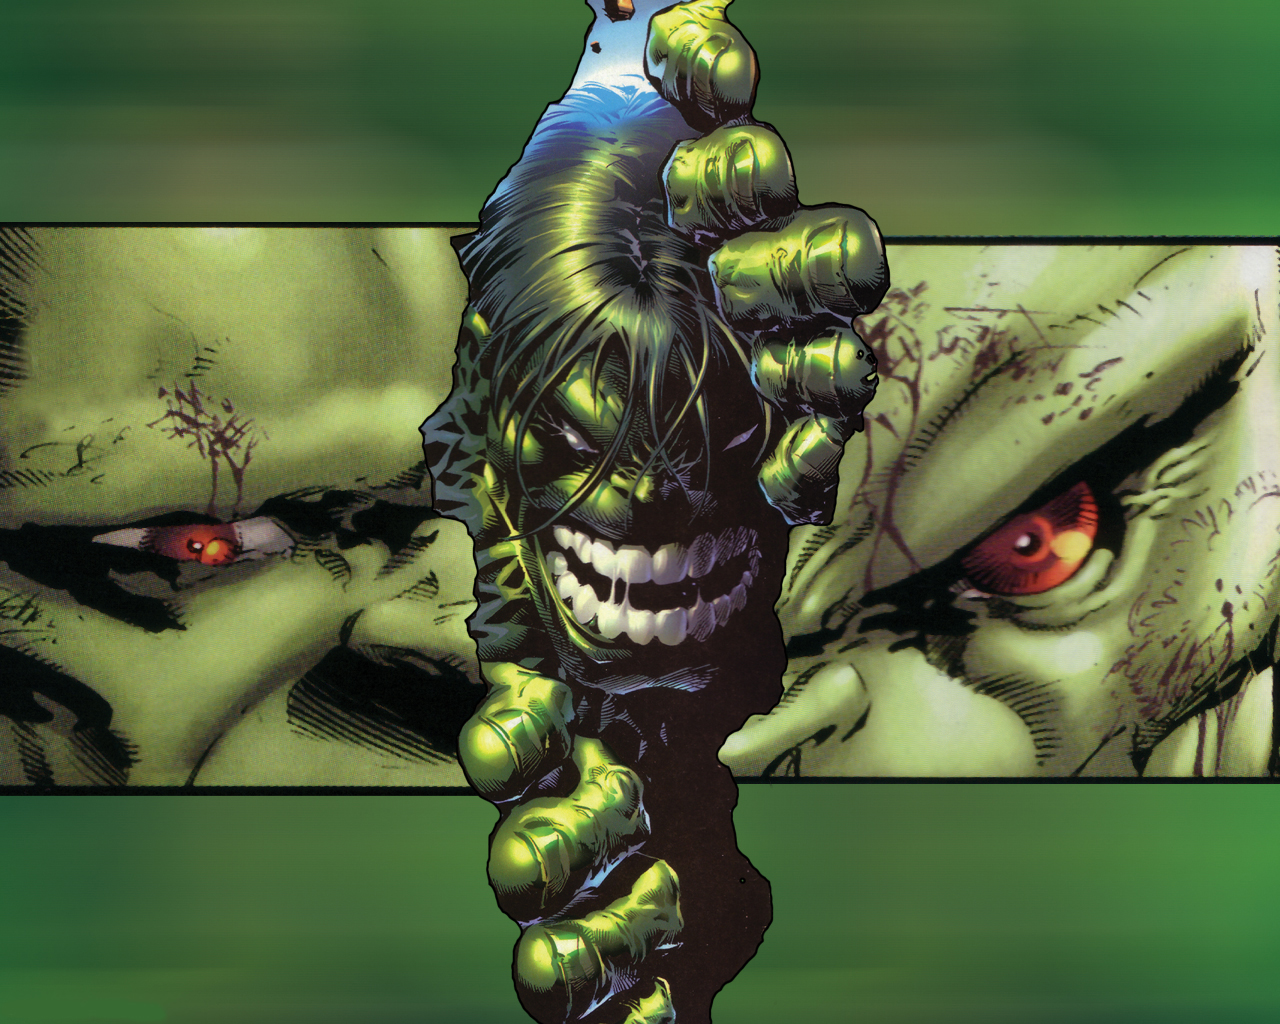 fond d'écran hulk 3d,personnage fictif,démon,illustration,oeuvre de cg,fiction